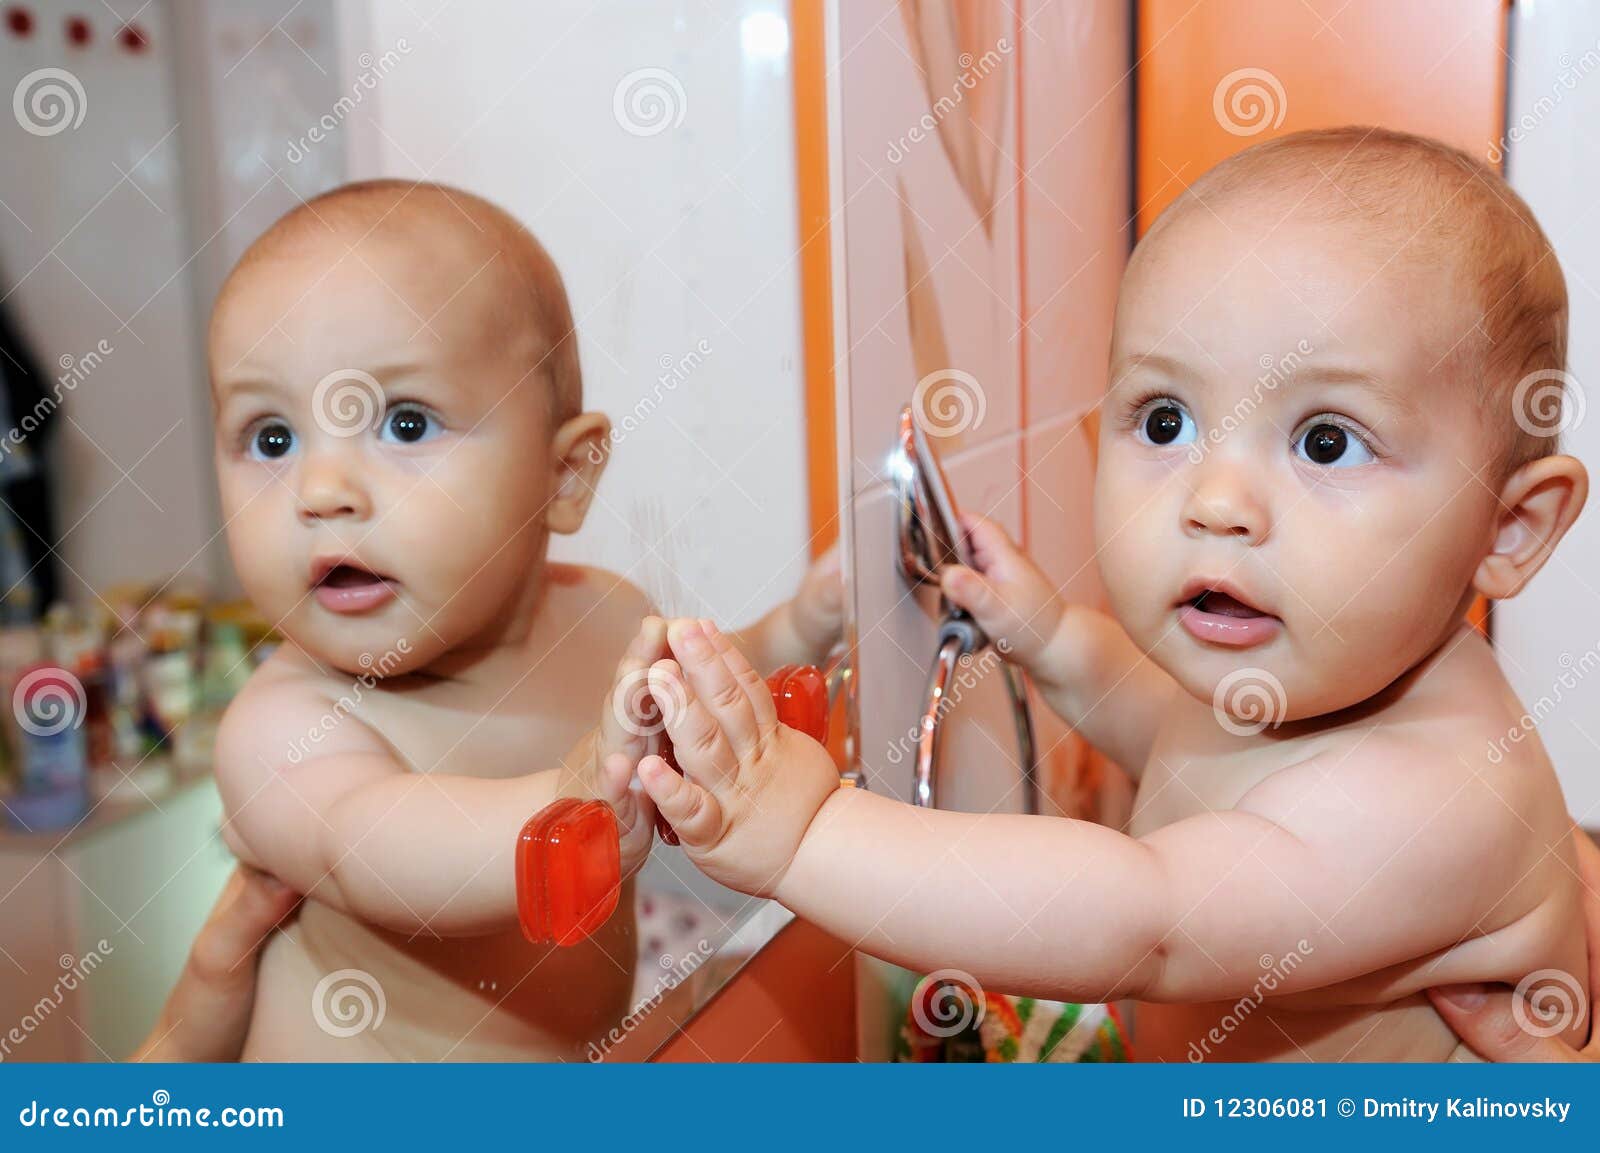 来看小宝宝照镜子咯_哔哩哔哩_bilibili